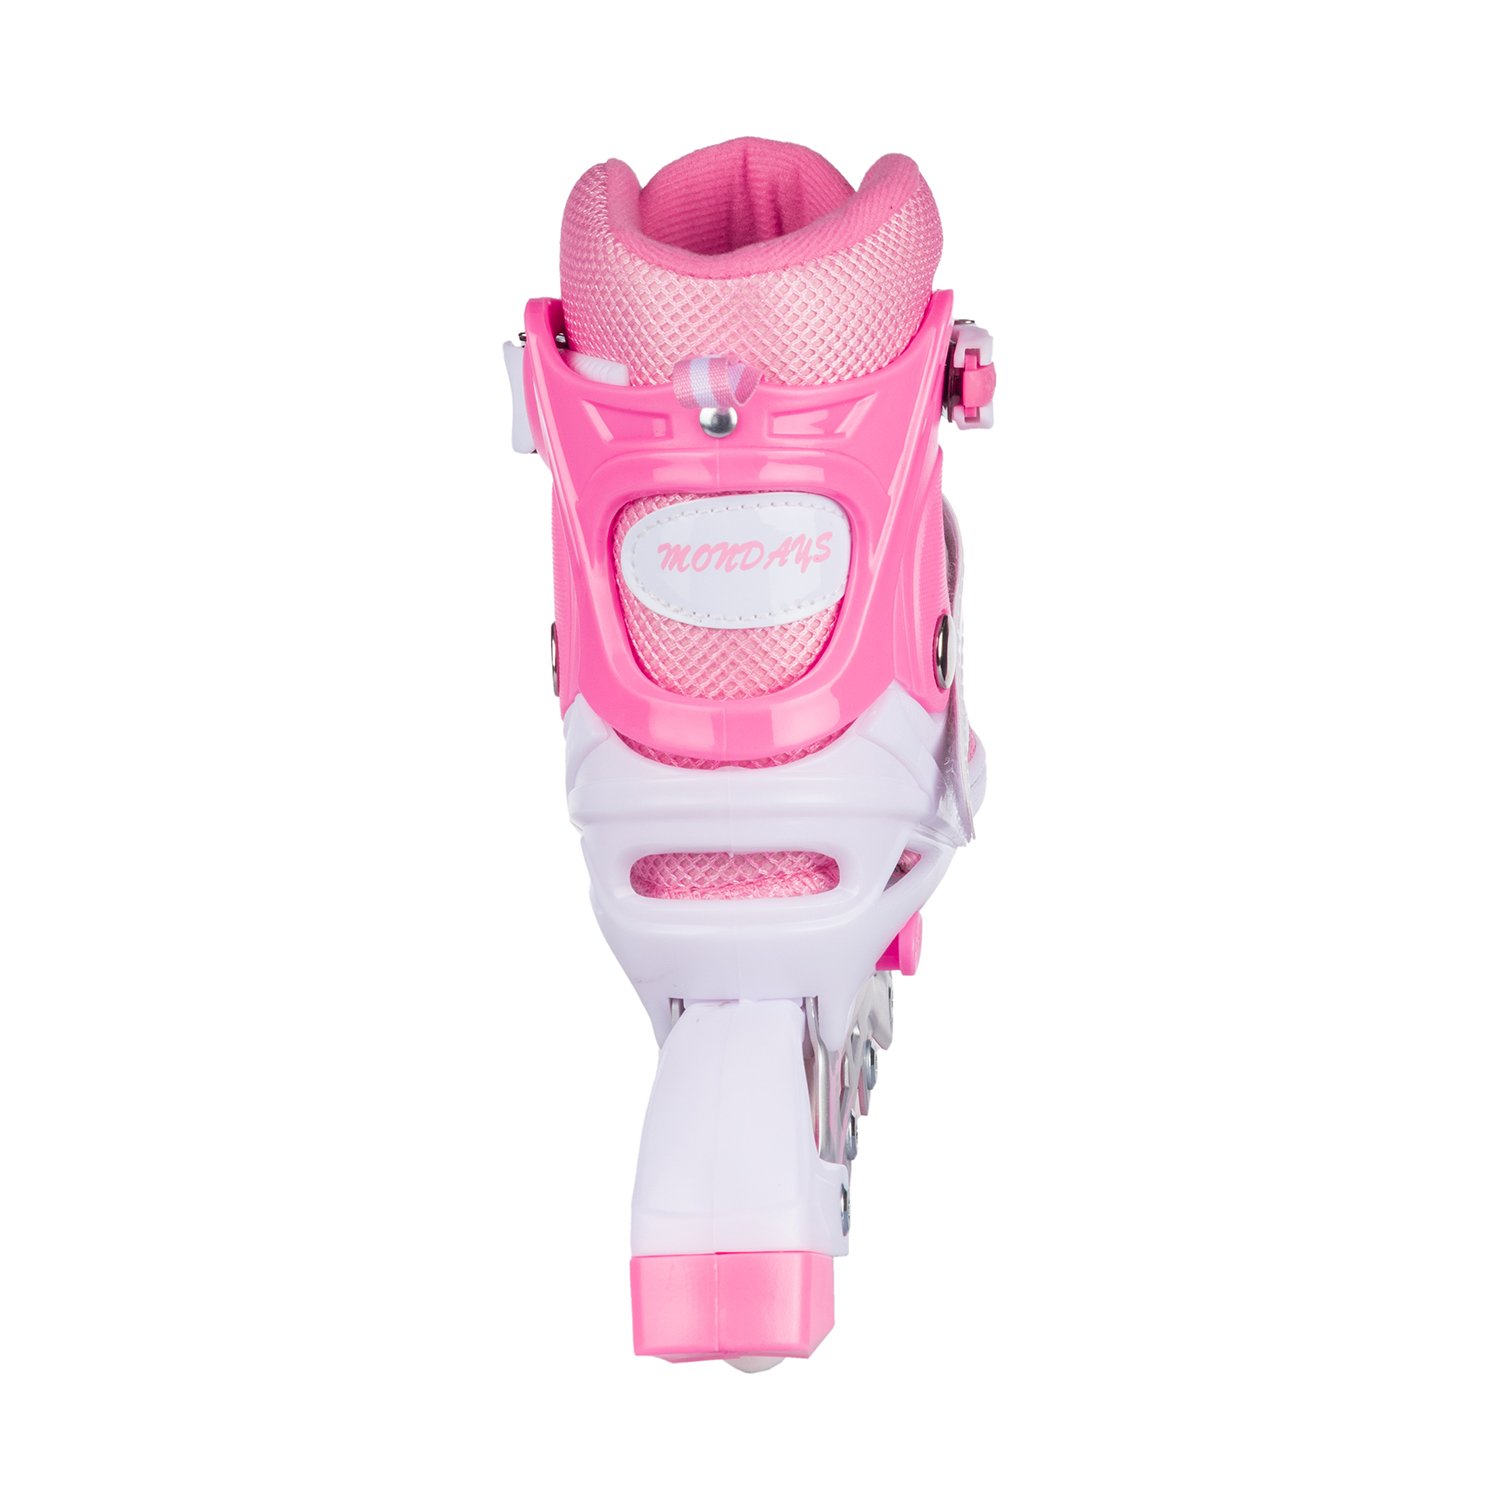 Роликовые коньки BABY STYLE розовые раздвижные размер с 32 по 35M светящиеся колеса - фото 5